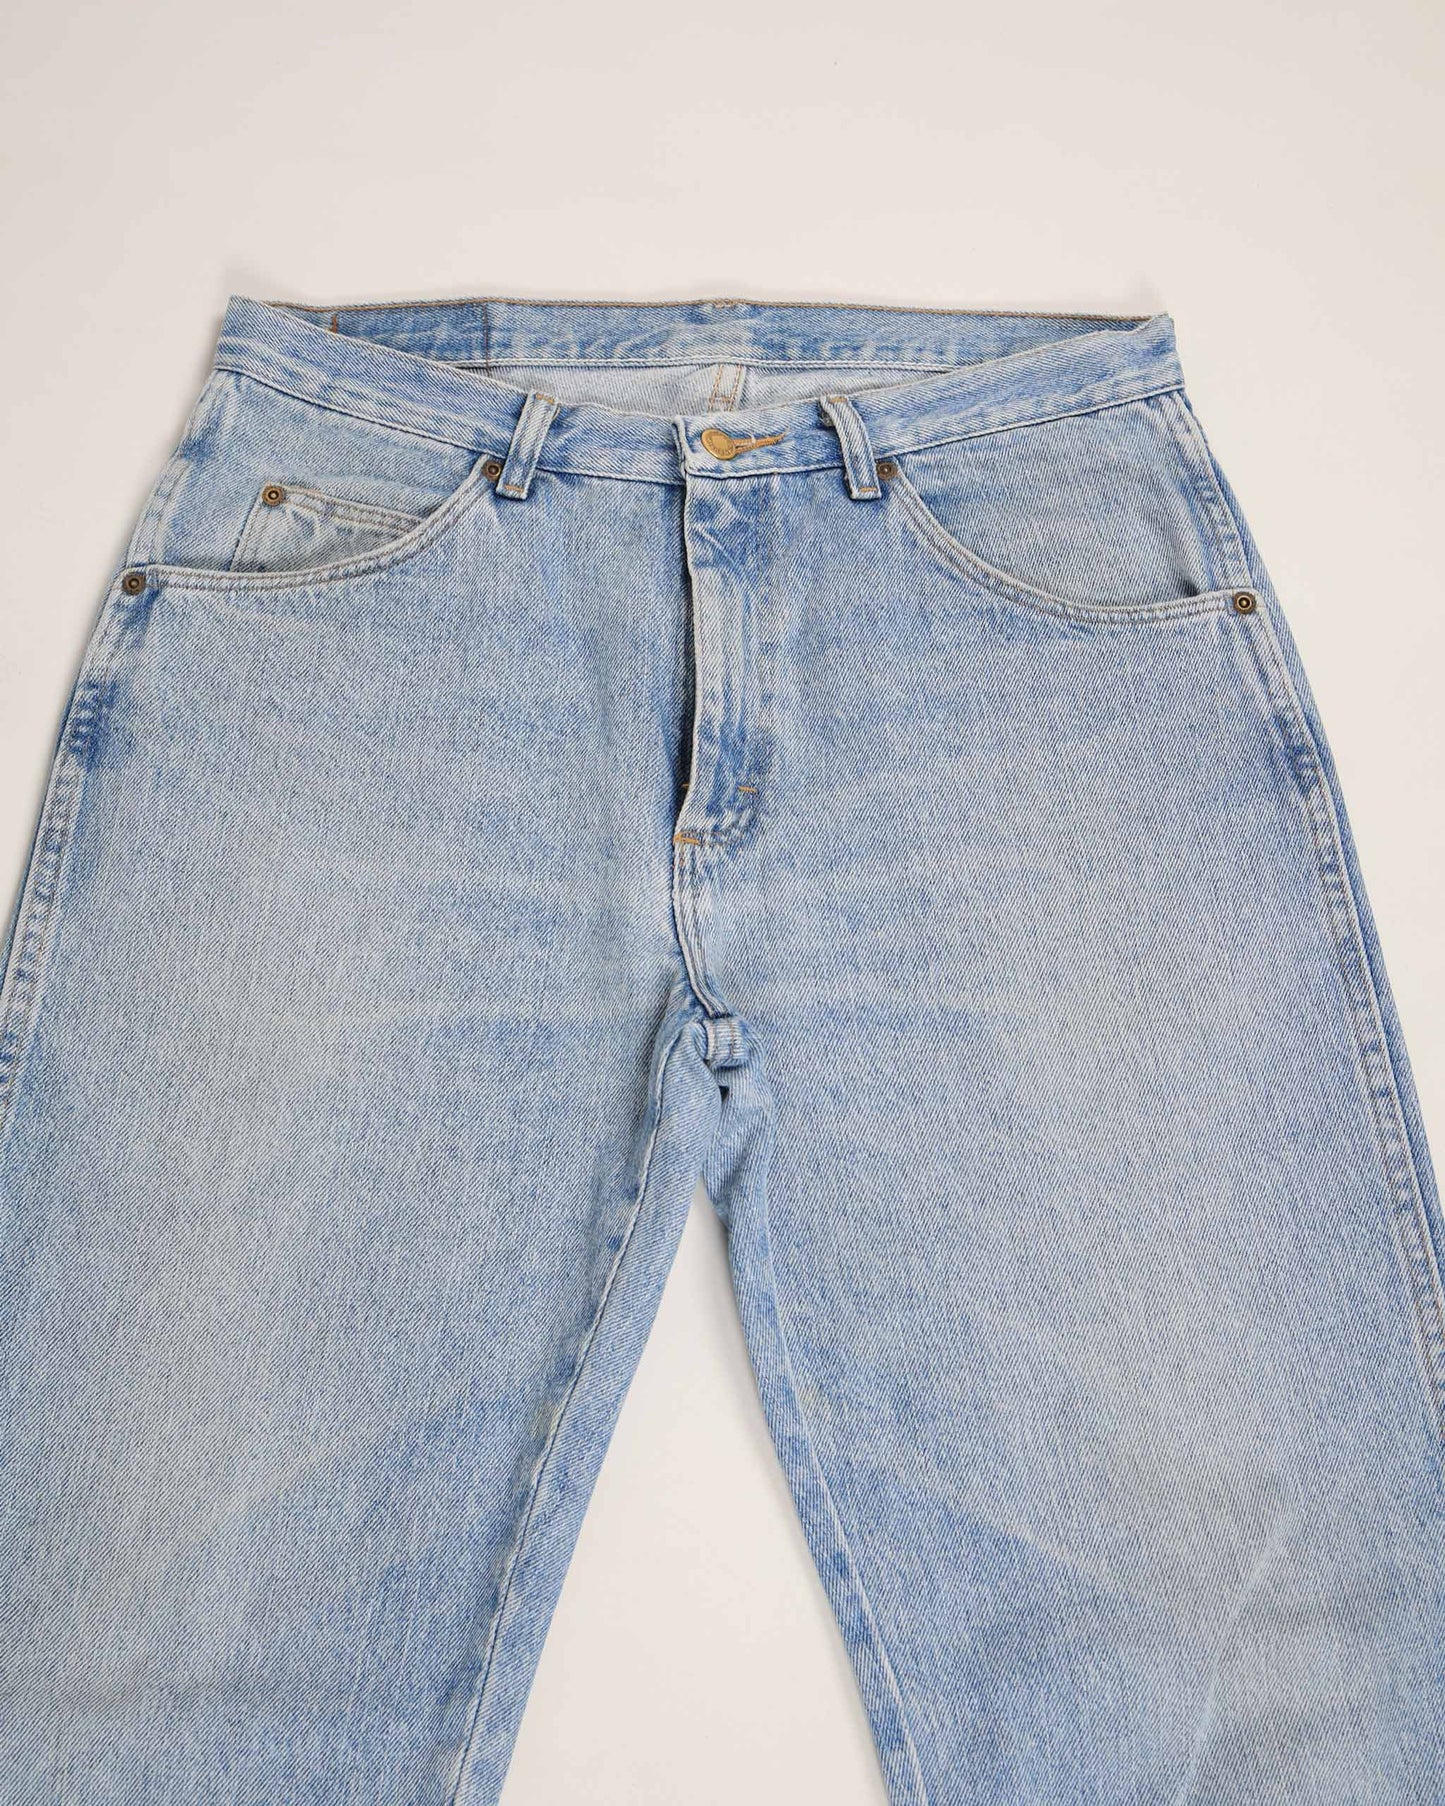 Jeans in denim vintage Wrangler